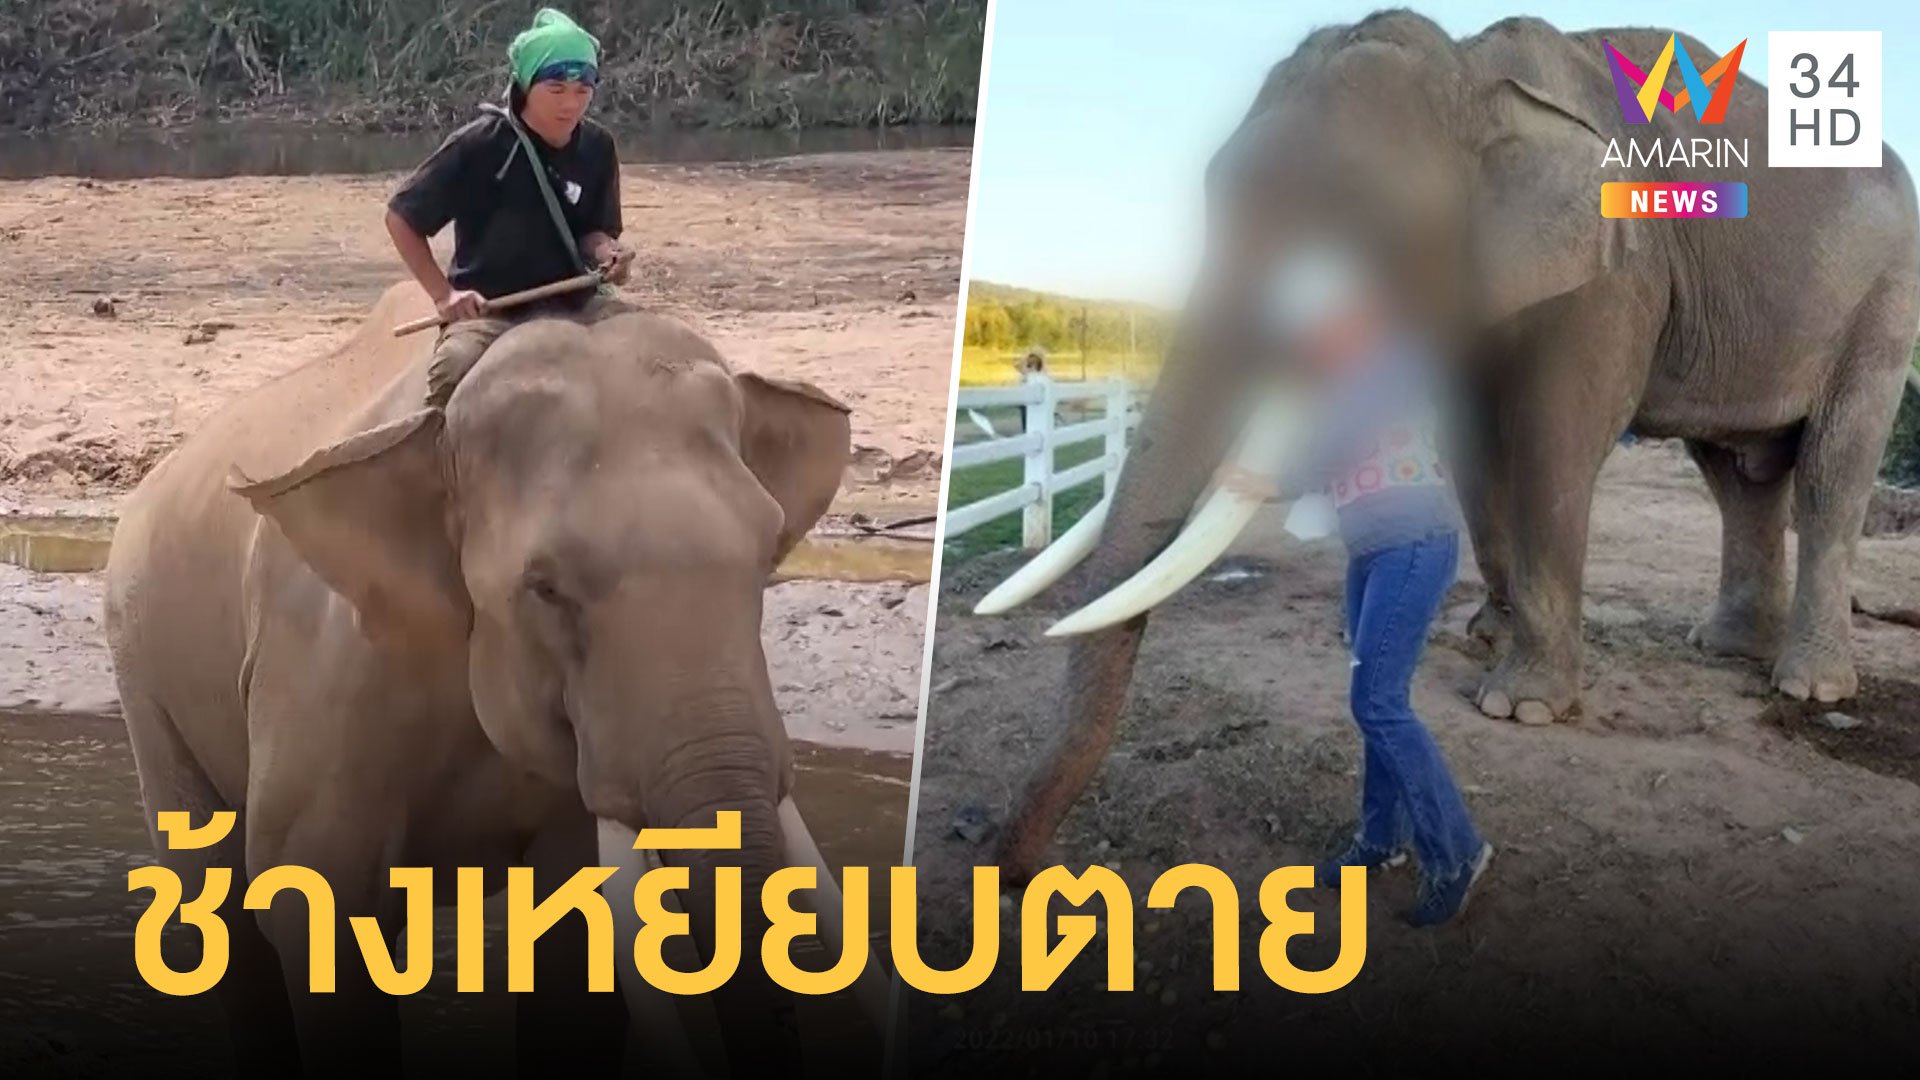 สาวลอดท้องช้างสะเดาะเคราะห์ ช้างเตะกระทืบซ้ำตาย | ข่าวอรุณอมรินทร์ | 16 ม.ค. 65 | AMARIN TVHD34